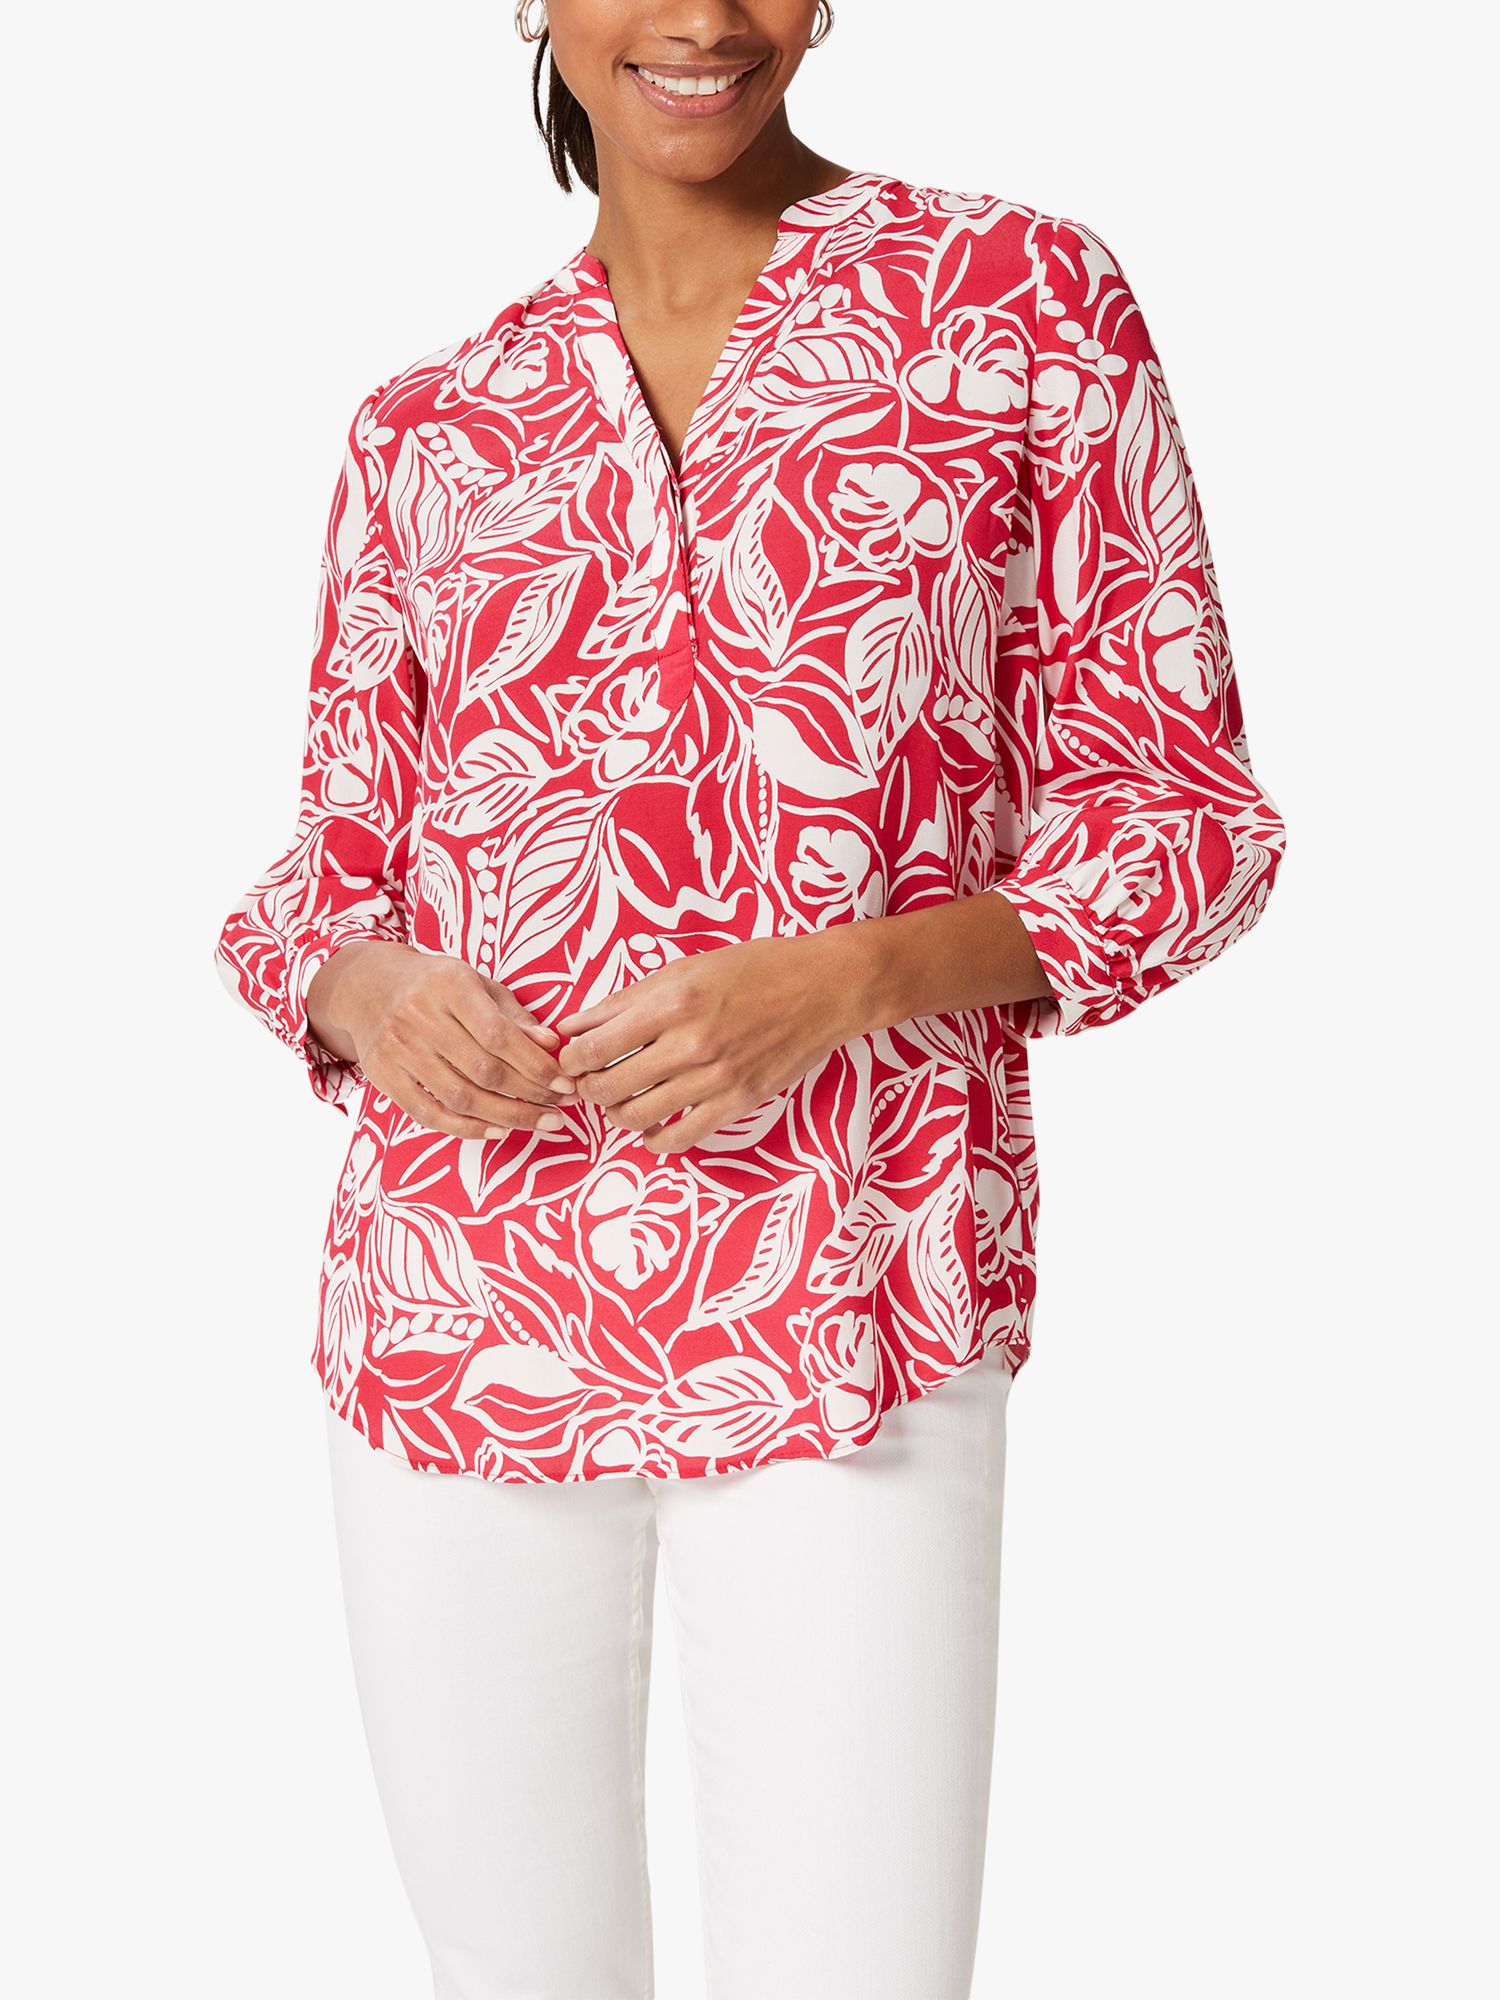 Hobbs Essie Блузка с цветочным принтом, разноцветный блузка с цветочным принтом xs разноцветный